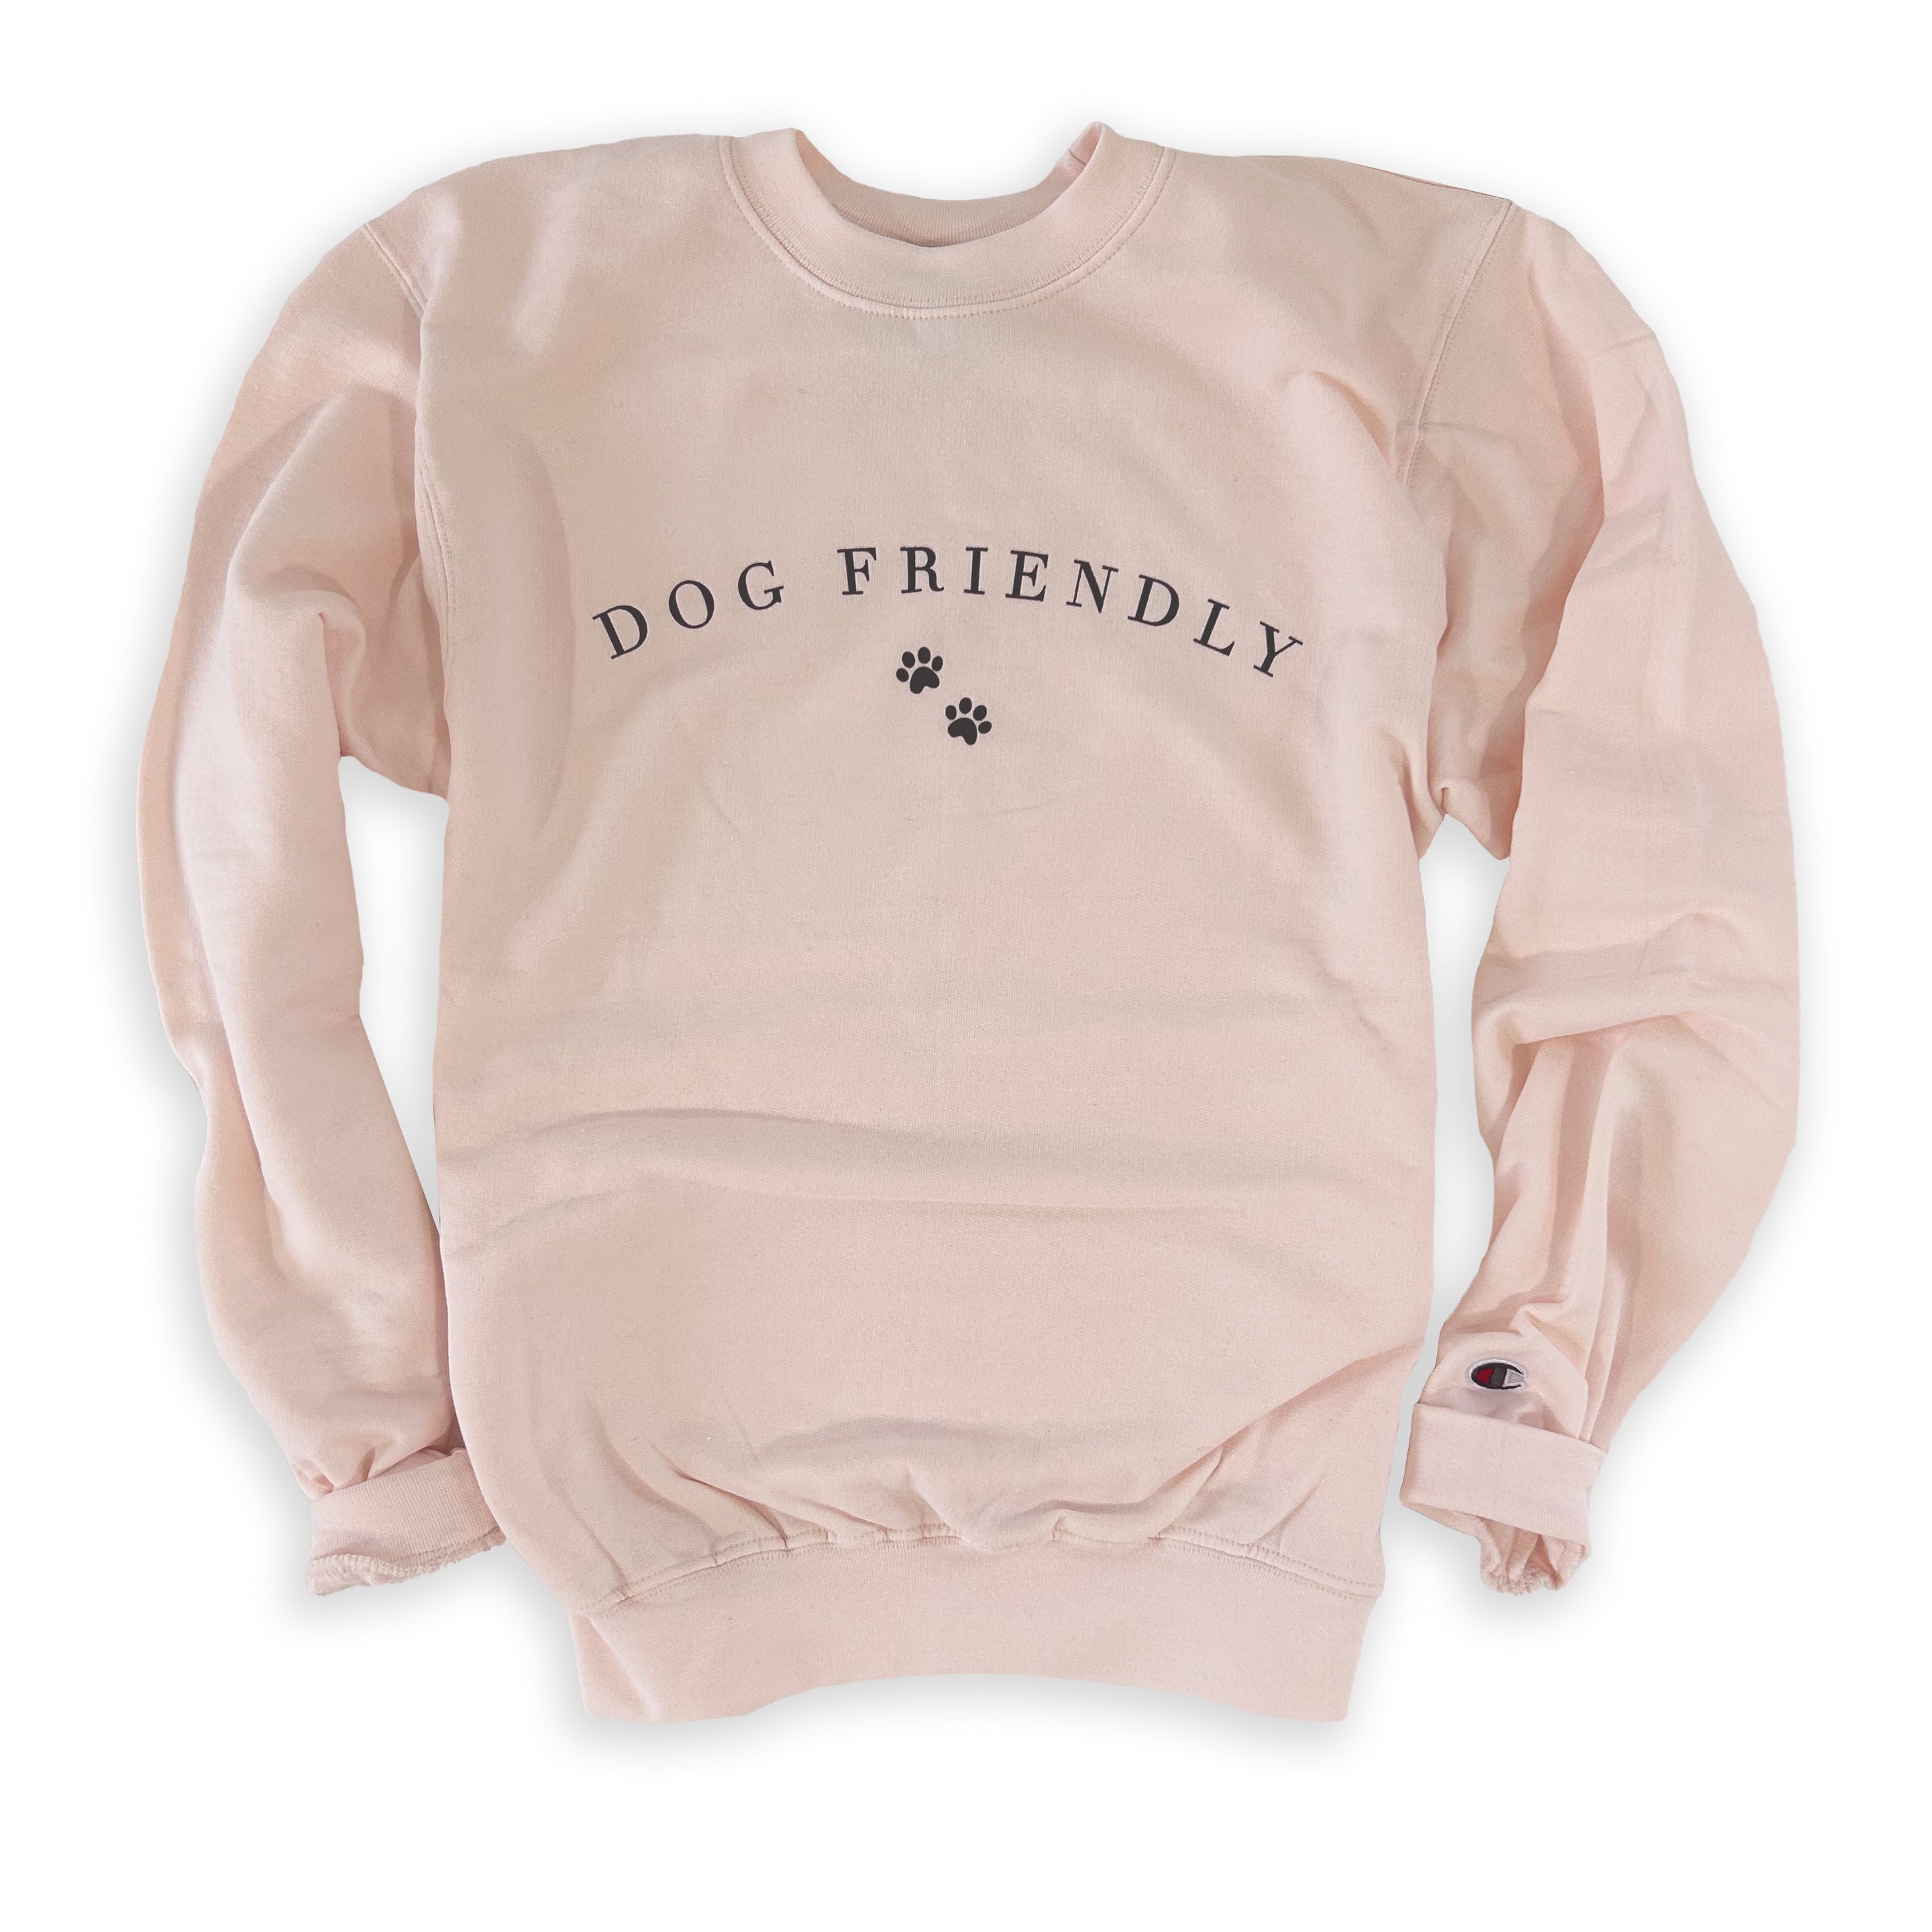 Dog Friendly sweatshirt